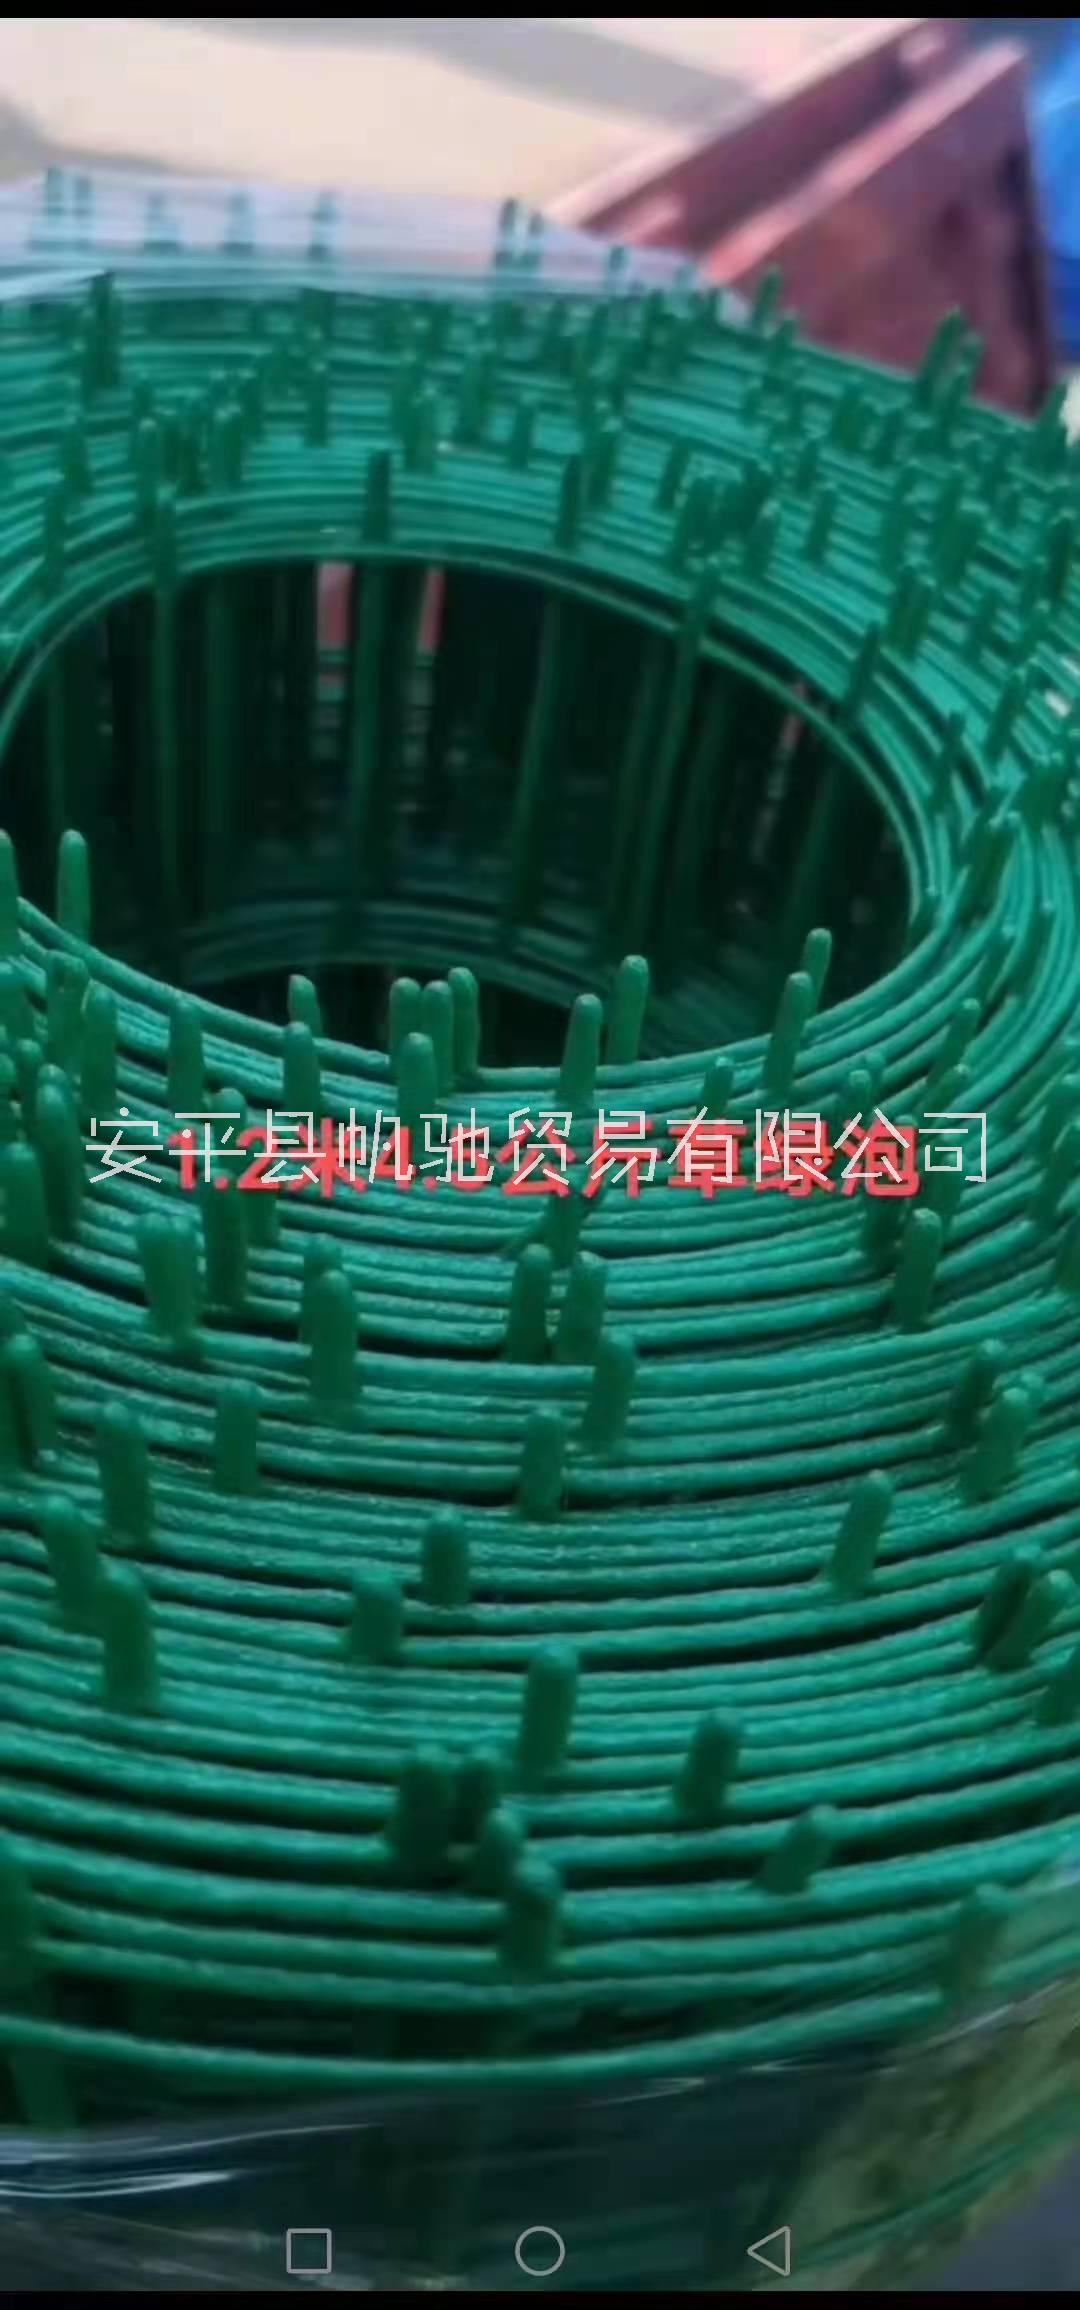 帆驰荷兰网 铁丝网养殖网围栏绿色铁丝网厂家图片